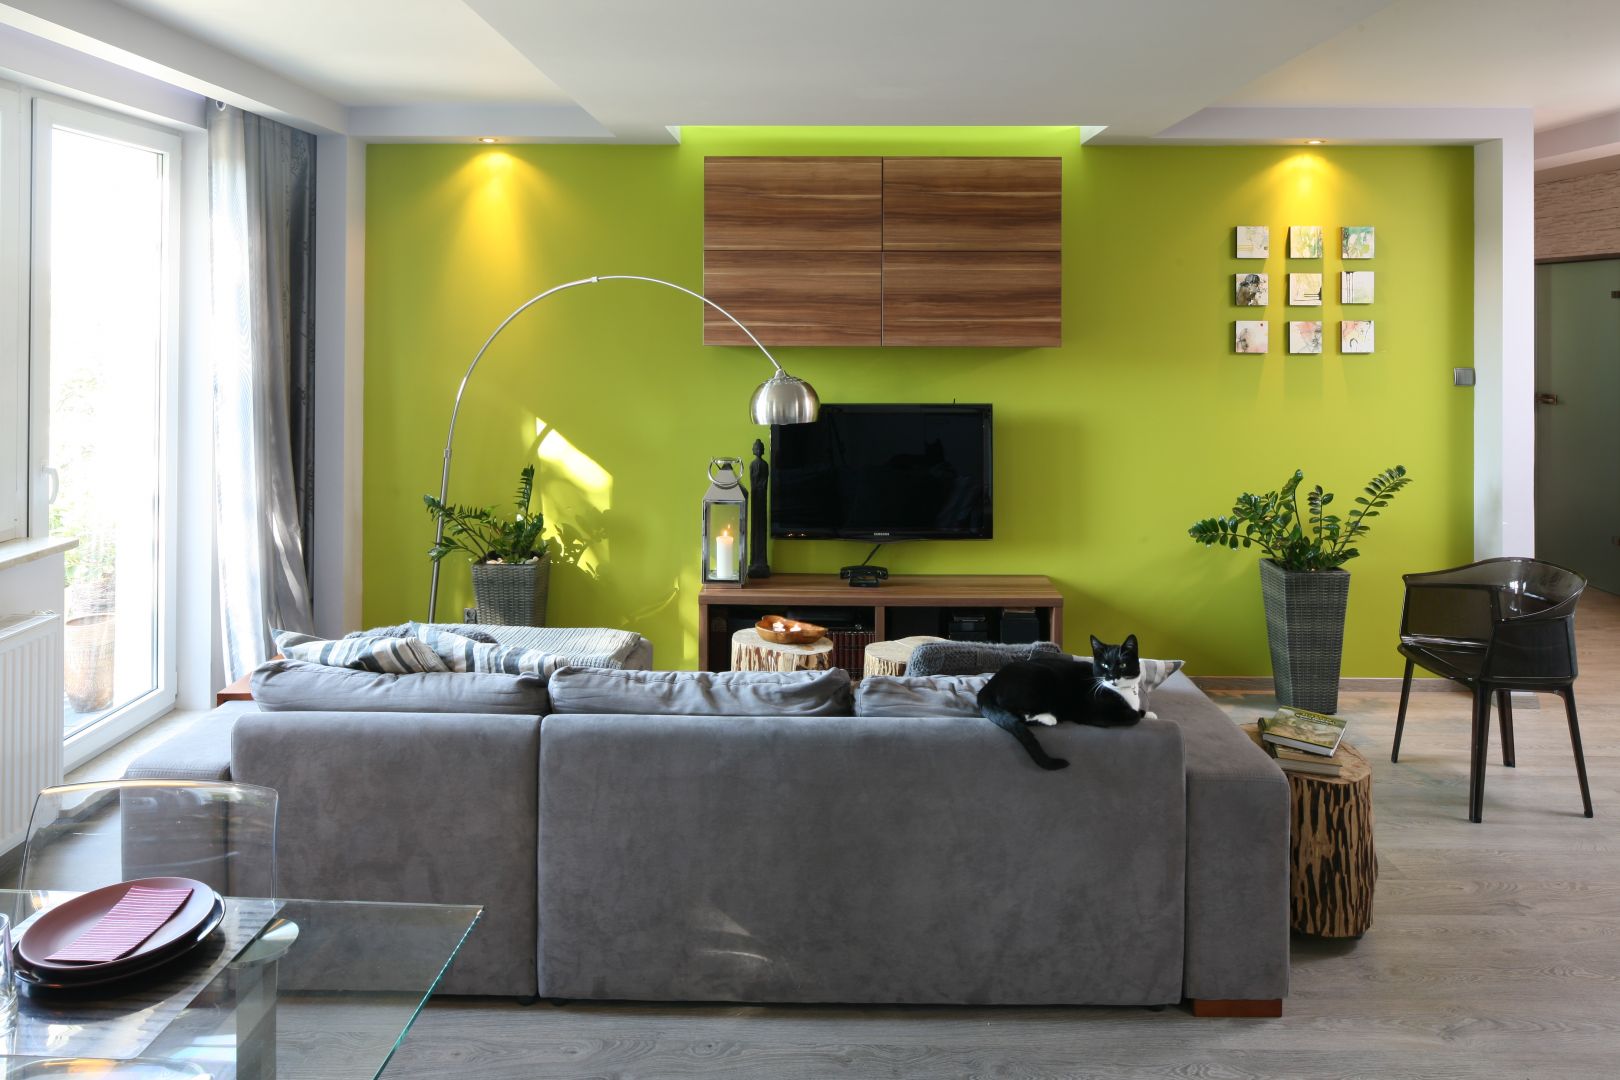 Soczyste barwy w salonie dodają mieszkańcom codziennej dawki energii. W salonie postawiono także sofę w najmodniejszym ostatnio kolorze - szarym. Projekt:. Arkadiusz Grzędzicki Fot. Bartosz Jarosz